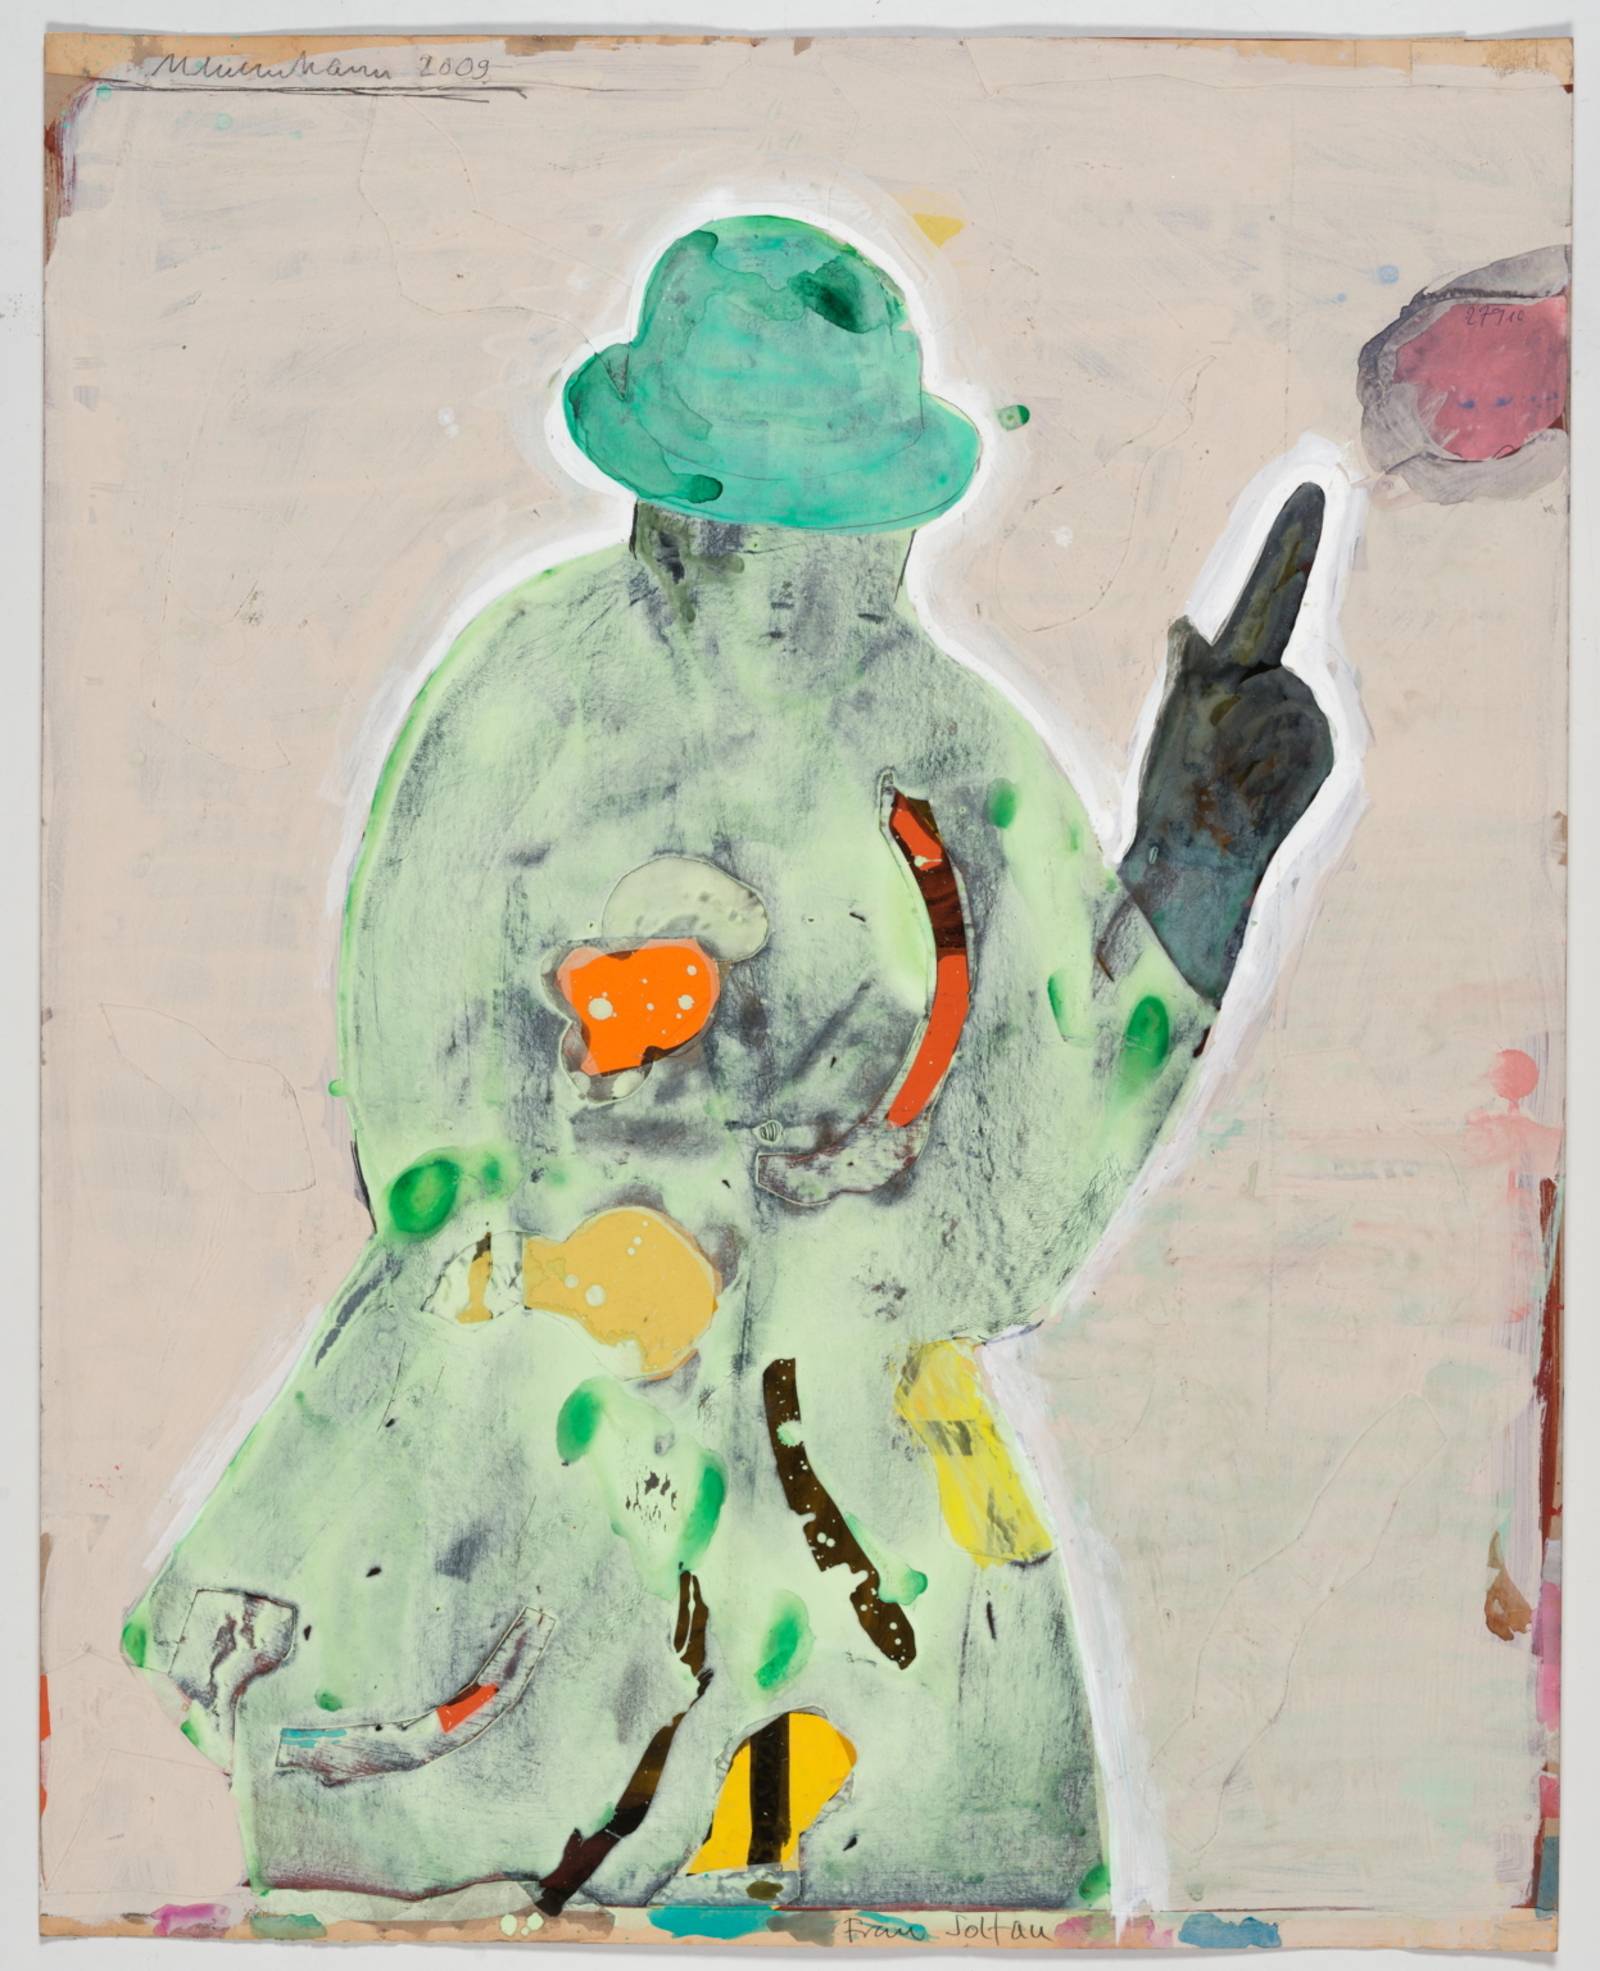 Zu sehen ist eine abstrakte Malerei, die einen Menschen in einem grünen Mantel mit Hut darstrellt.